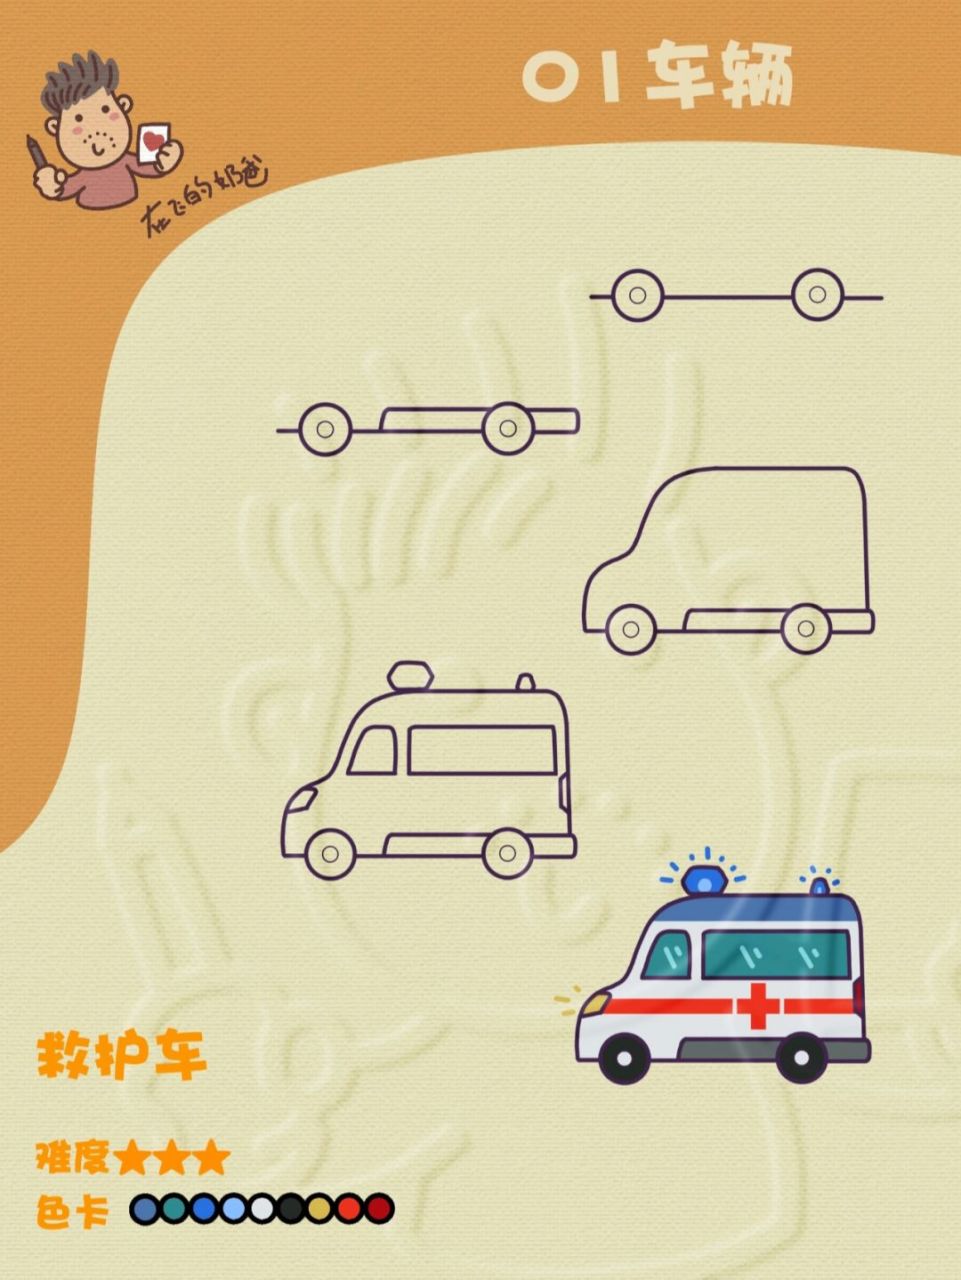 救护车简笔画教程图片